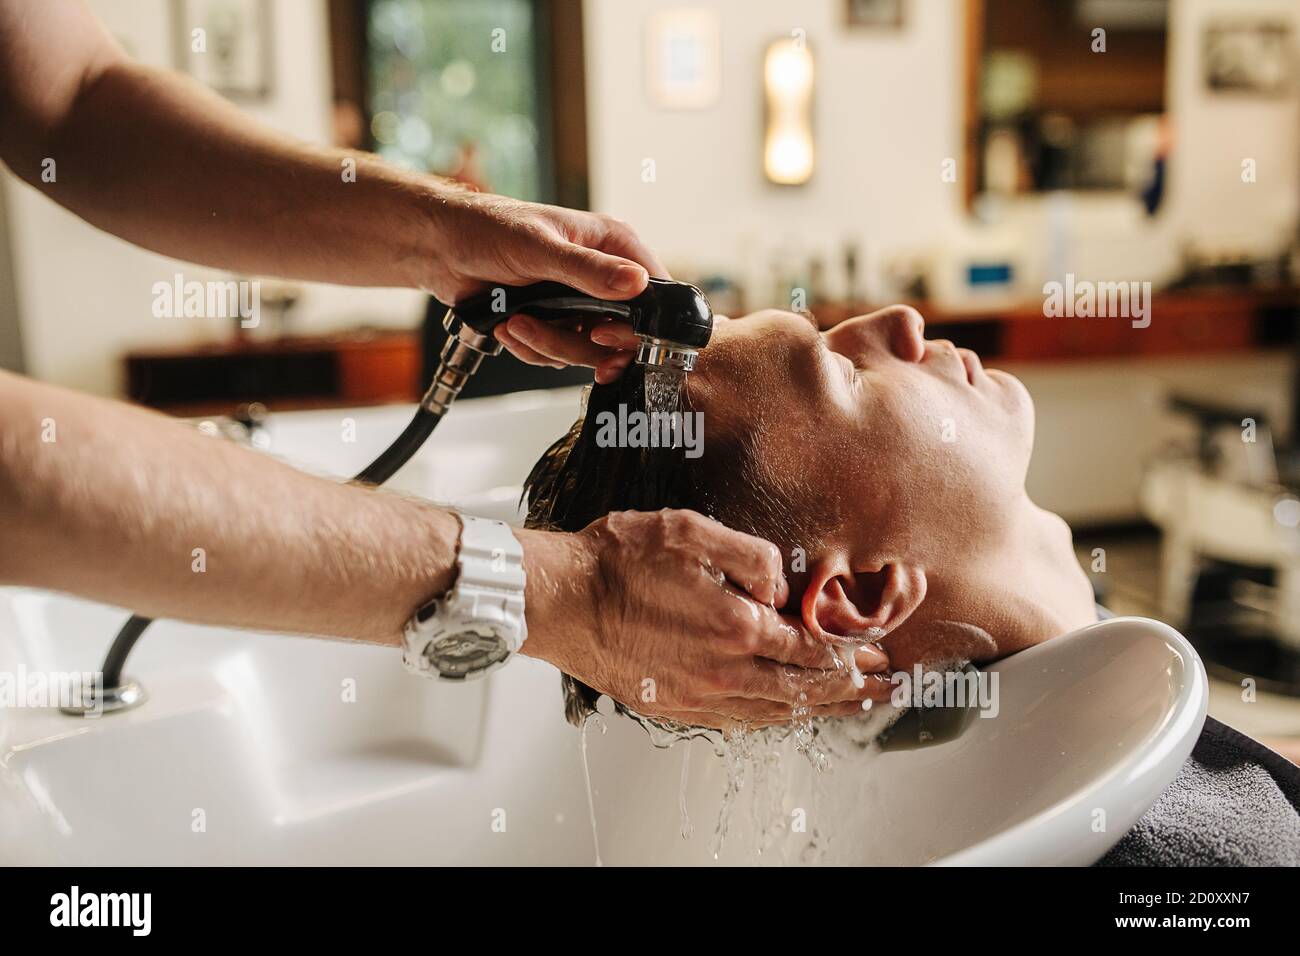 Hände waschen den Kopf des Kunden in einem speziellen Waschbecken in einem Friseur Stockfoto